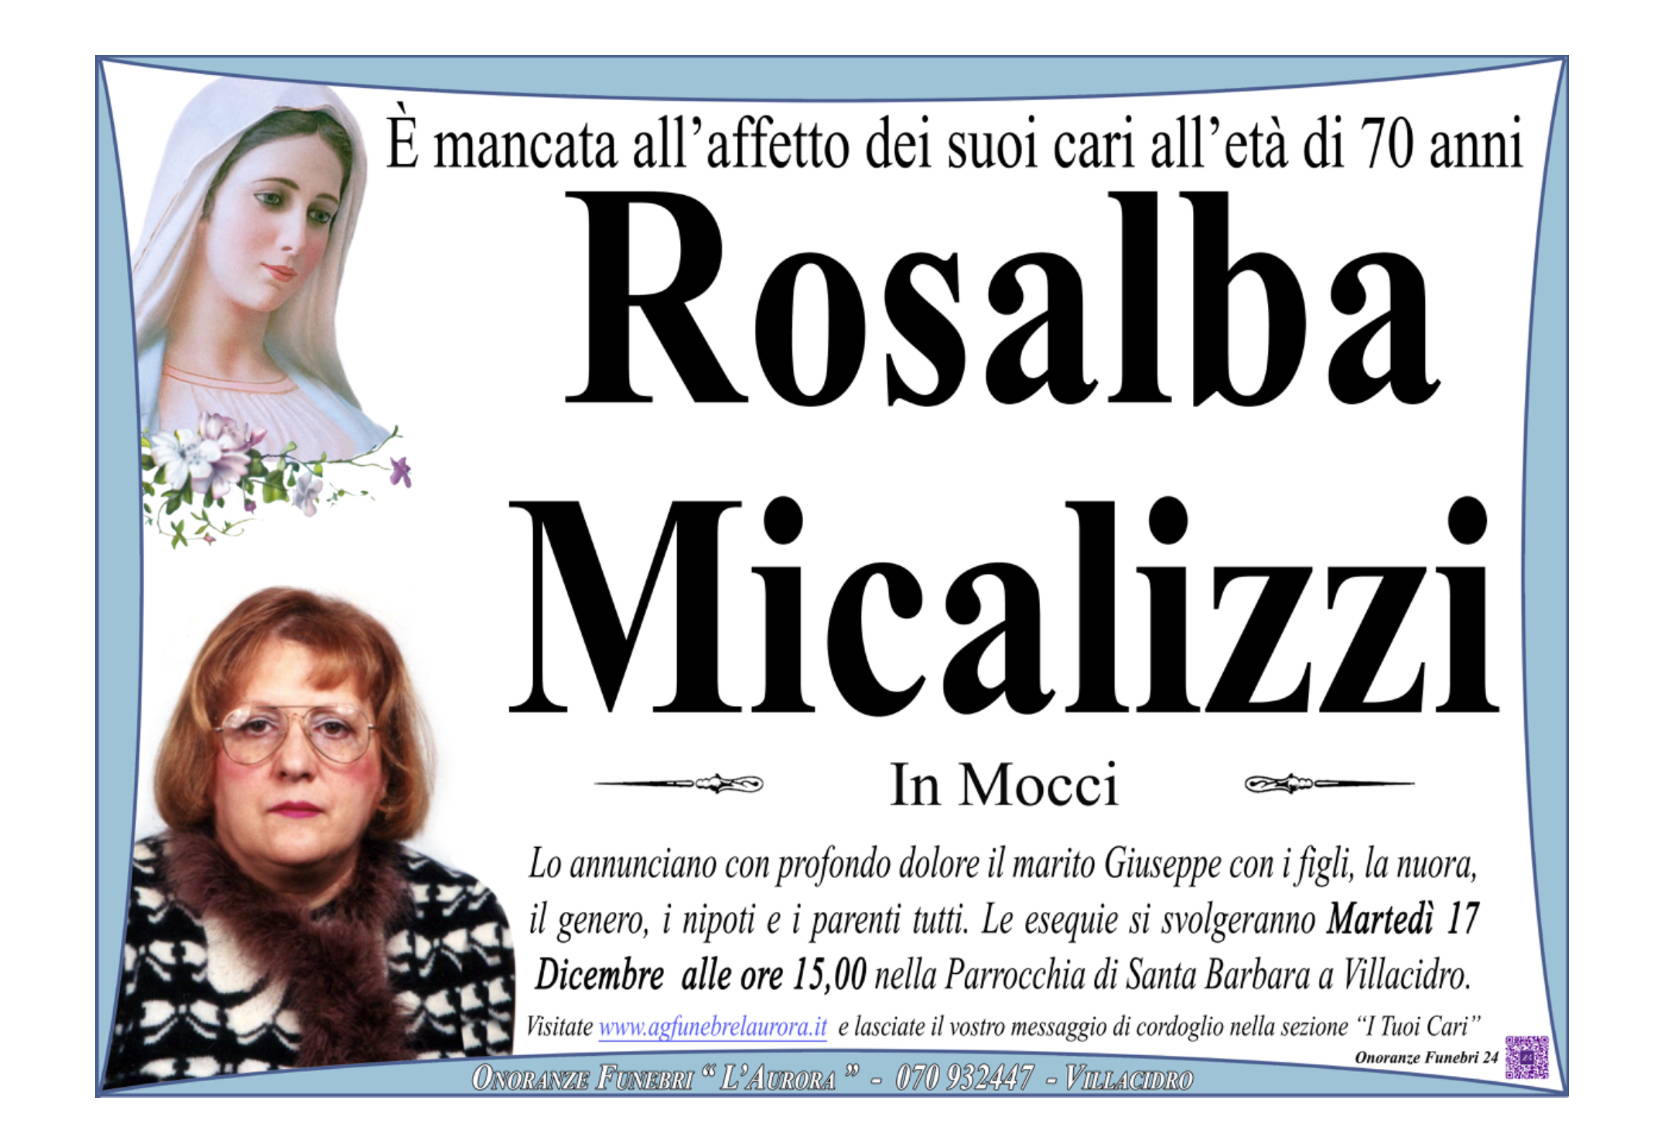 Rosalba Micalizzi